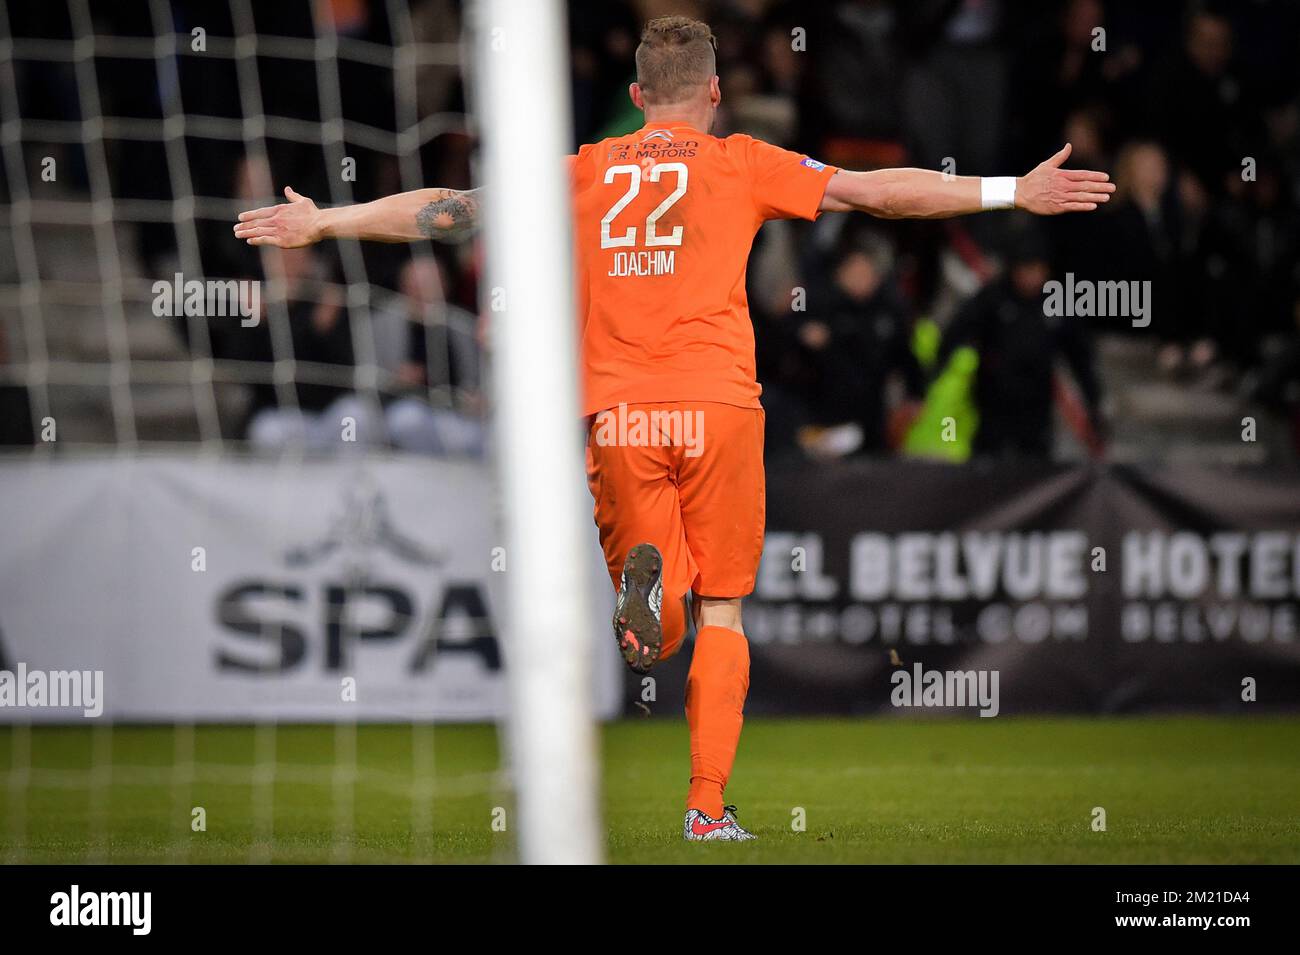 Aurelien de Star, celebra después de marcar durante el partido entre Bruxelles Patro Eisden Maasmechelen, último partido en la Liga Proximus, campeonato belga de fútbol de segunda división,